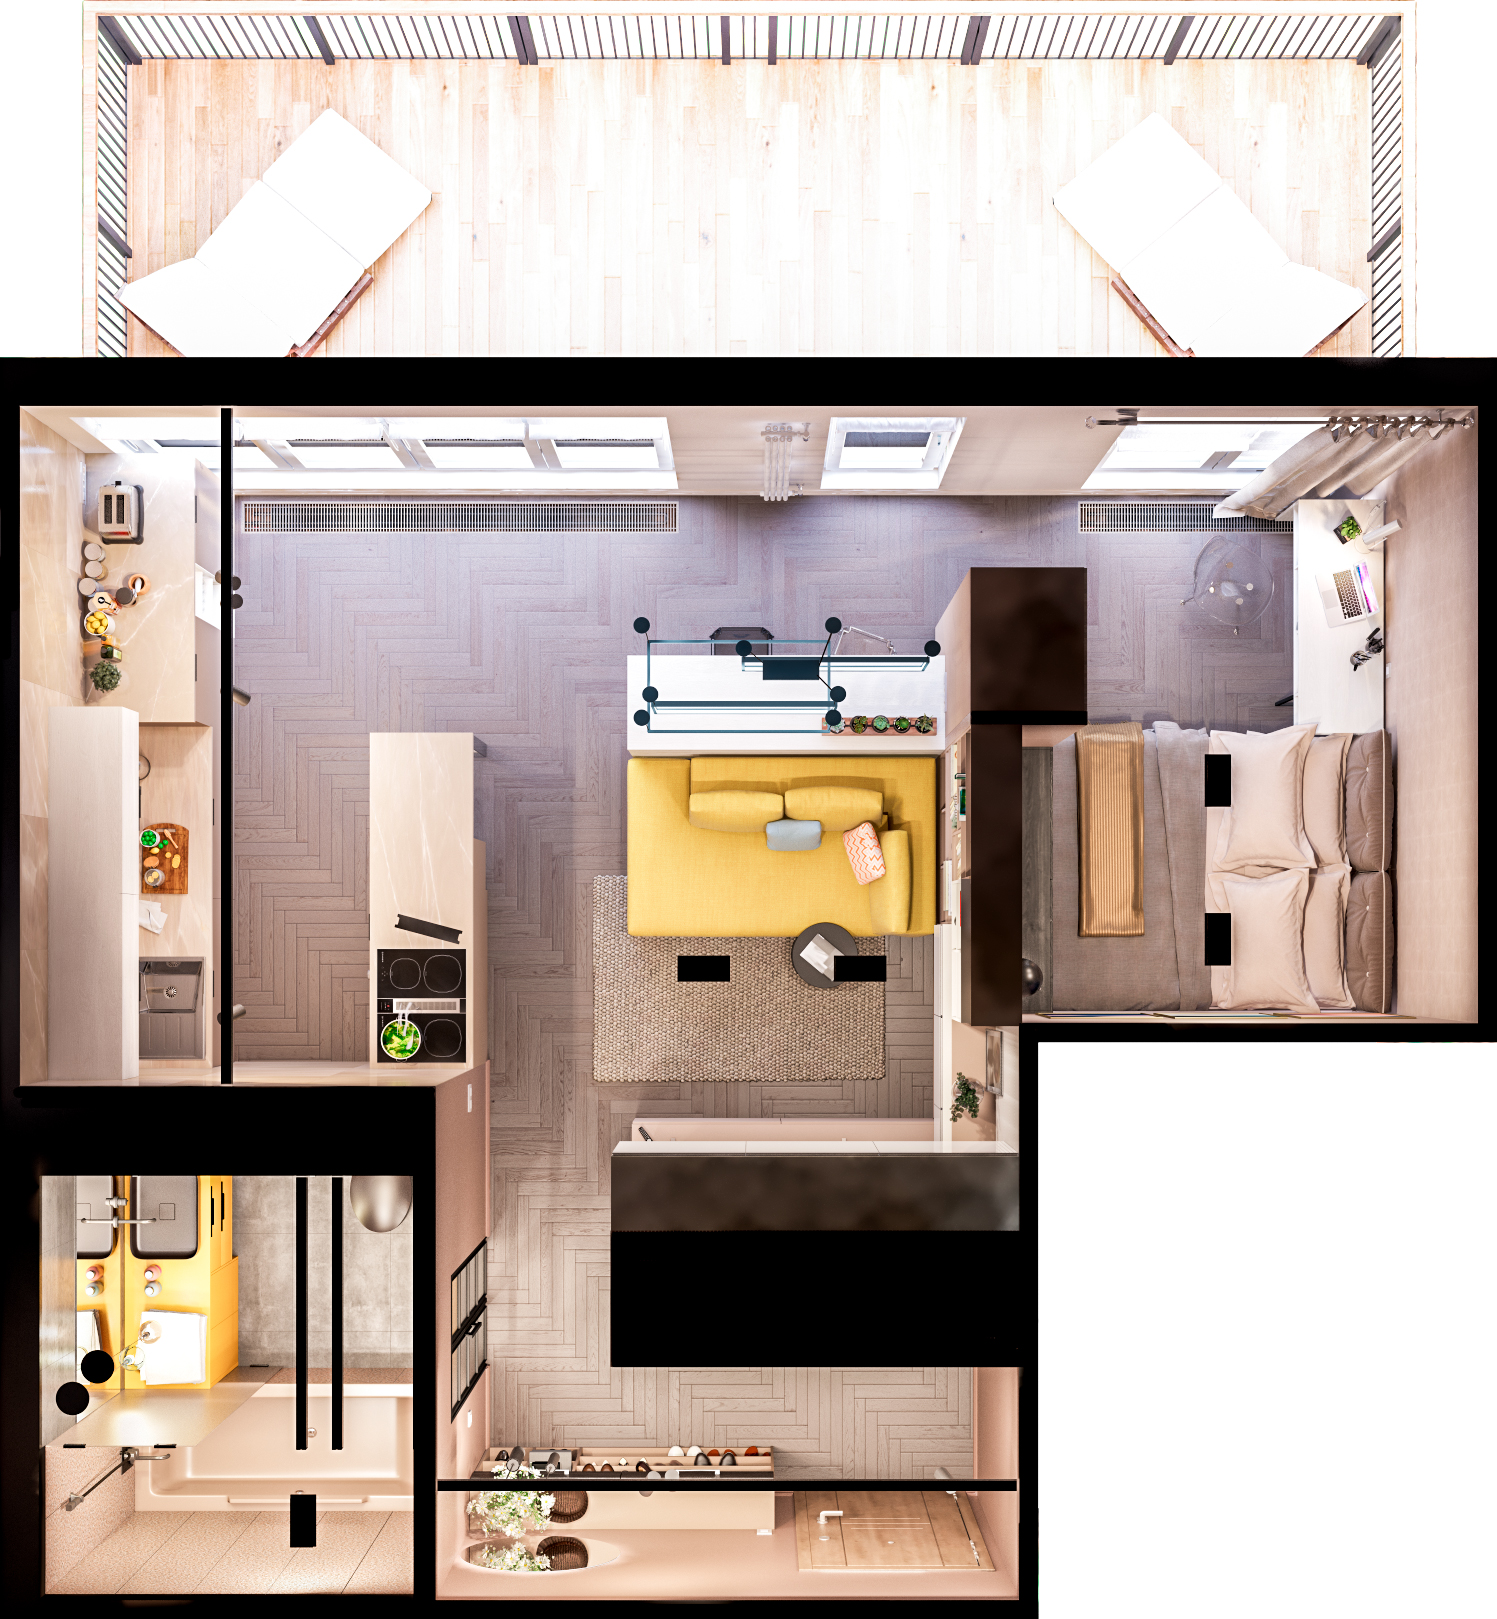 Особенности дизайна кухни-гостиной 18 кв. метров: 37 вариантов оформления планировки